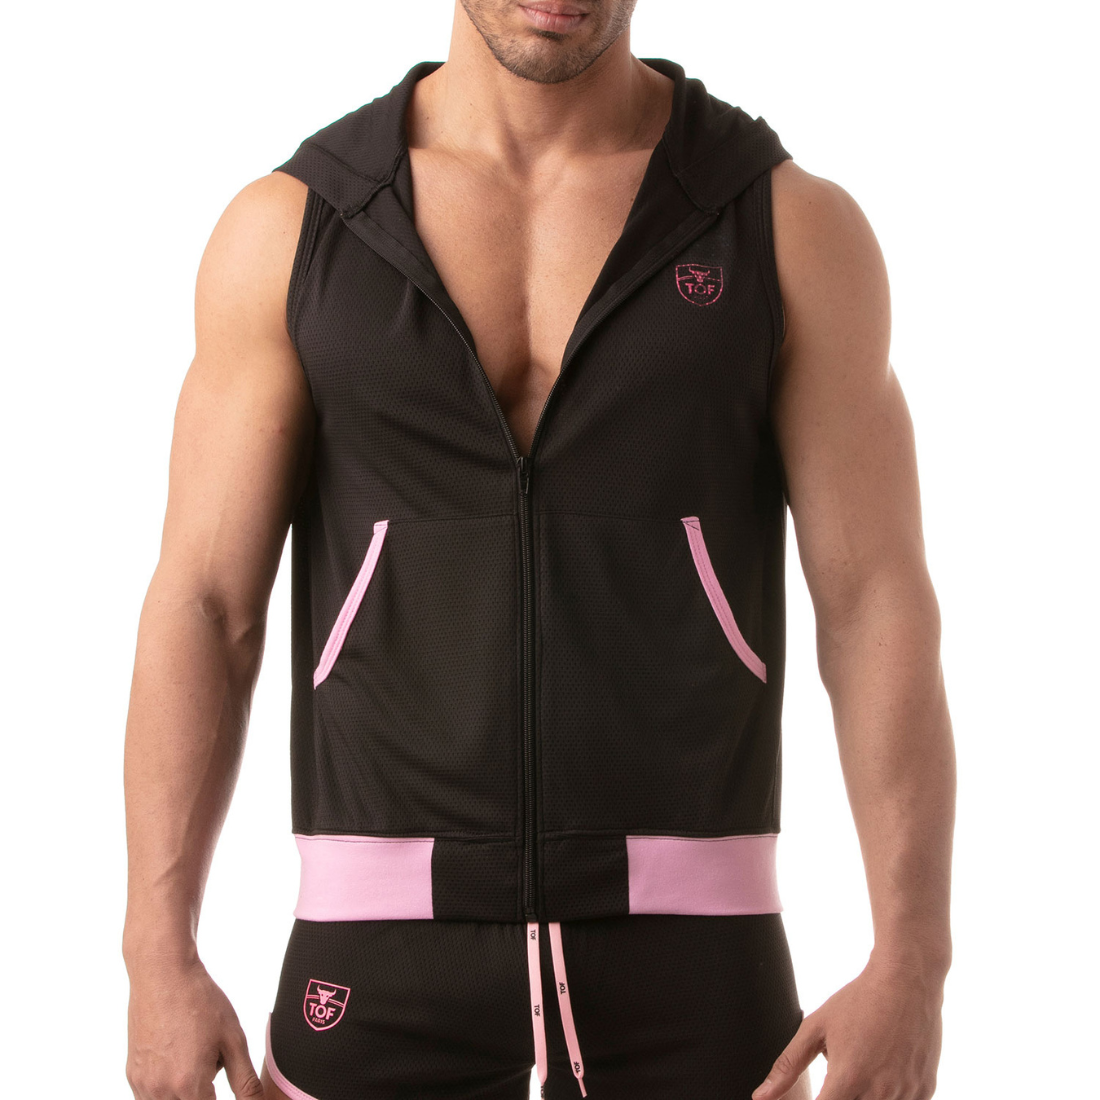 Zwarte hoodie zonder mouwen met roze accenten, ontworpen door het Franse modehuis Tof Paris en te koop bij Flavourez.